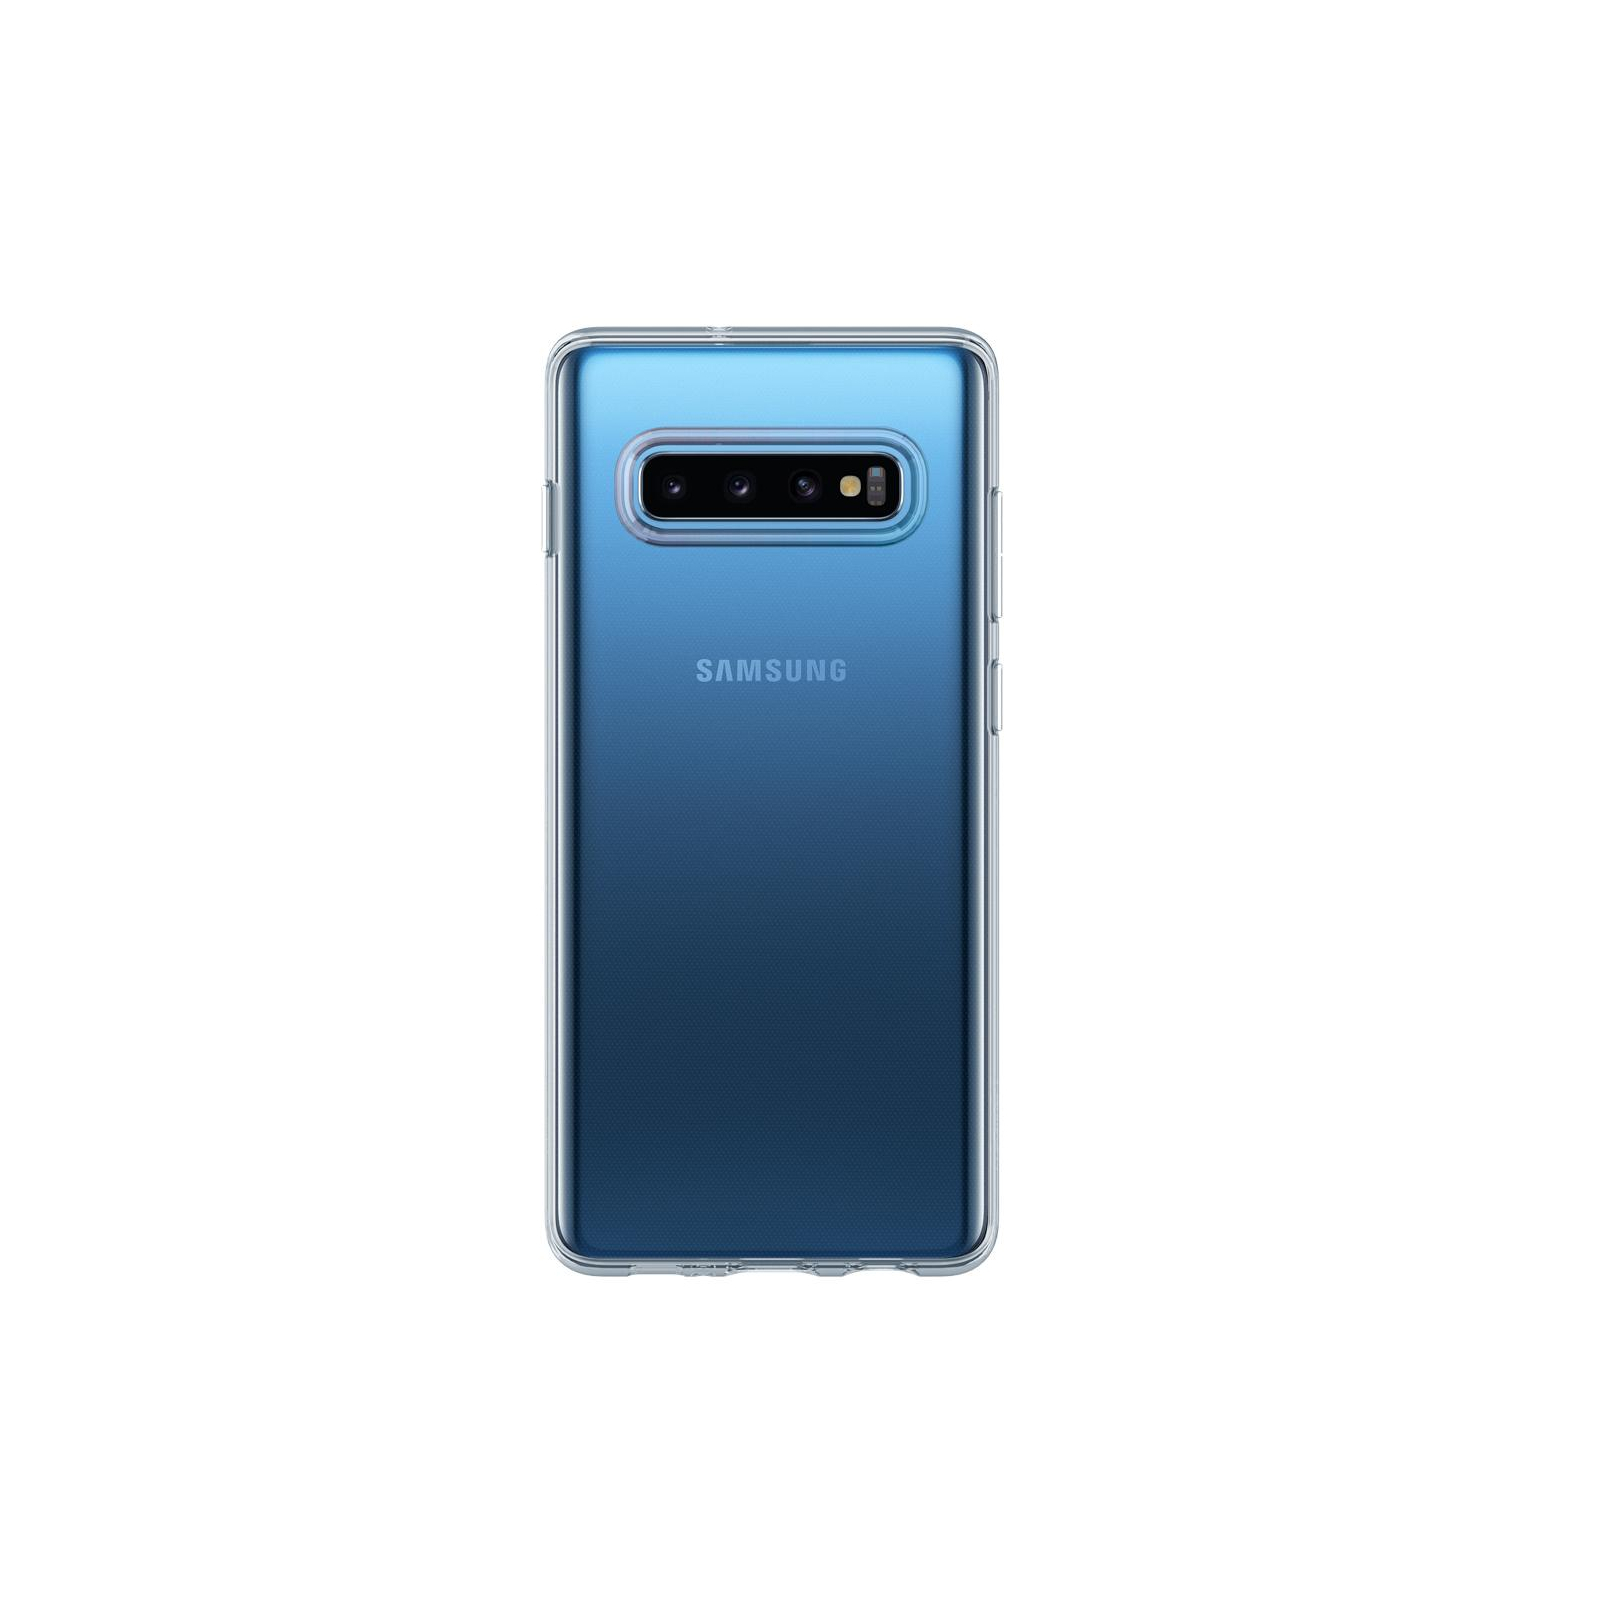 Чехол для мобильного телефона Spigen Galaxy S10+ Liquid Crystal Crystal Clear (606CS25761) изображение 8